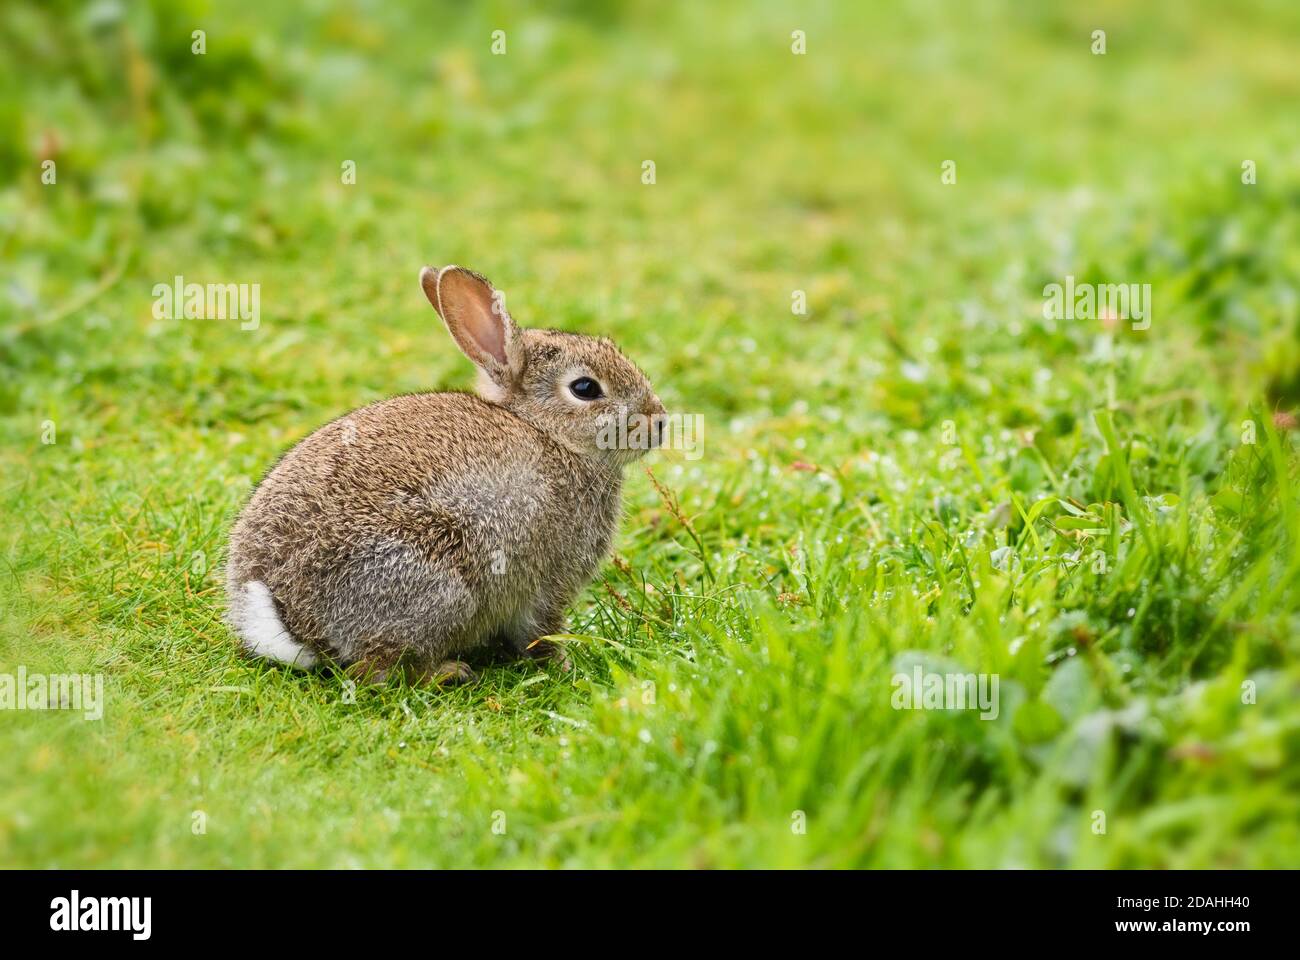 European Rabbit - Oryctolagus cuniculus, niedliches kleines Säugetier aus europäischen Wiesen und Weiden, Shetlands, Scotlank, UK. Stockfoto